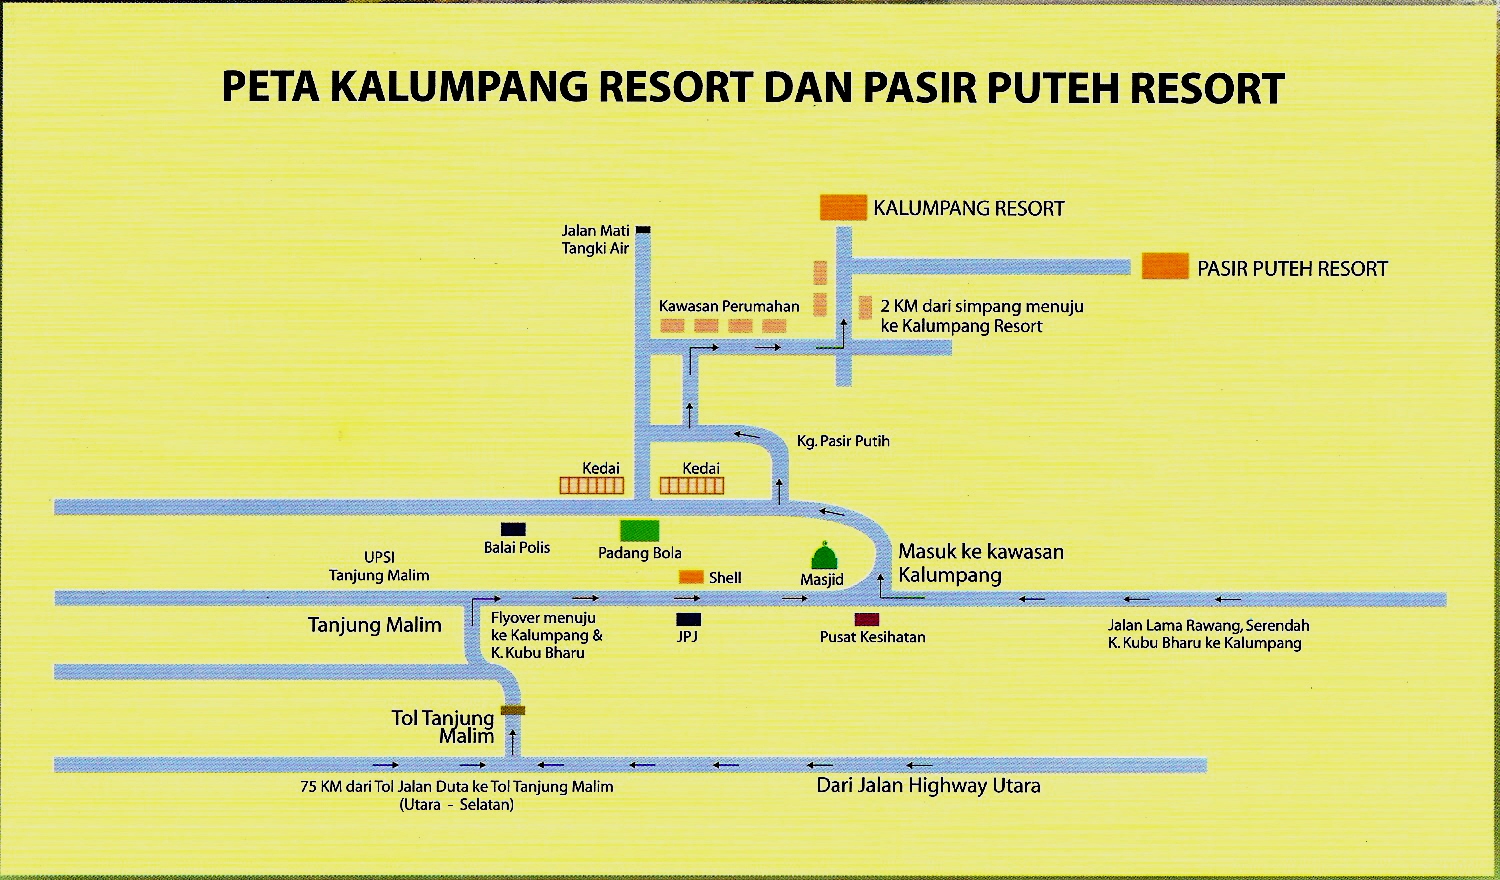 PASTI KAWASAN TANJUNG MALIM: Peta ke Pasir Puteh Resort 